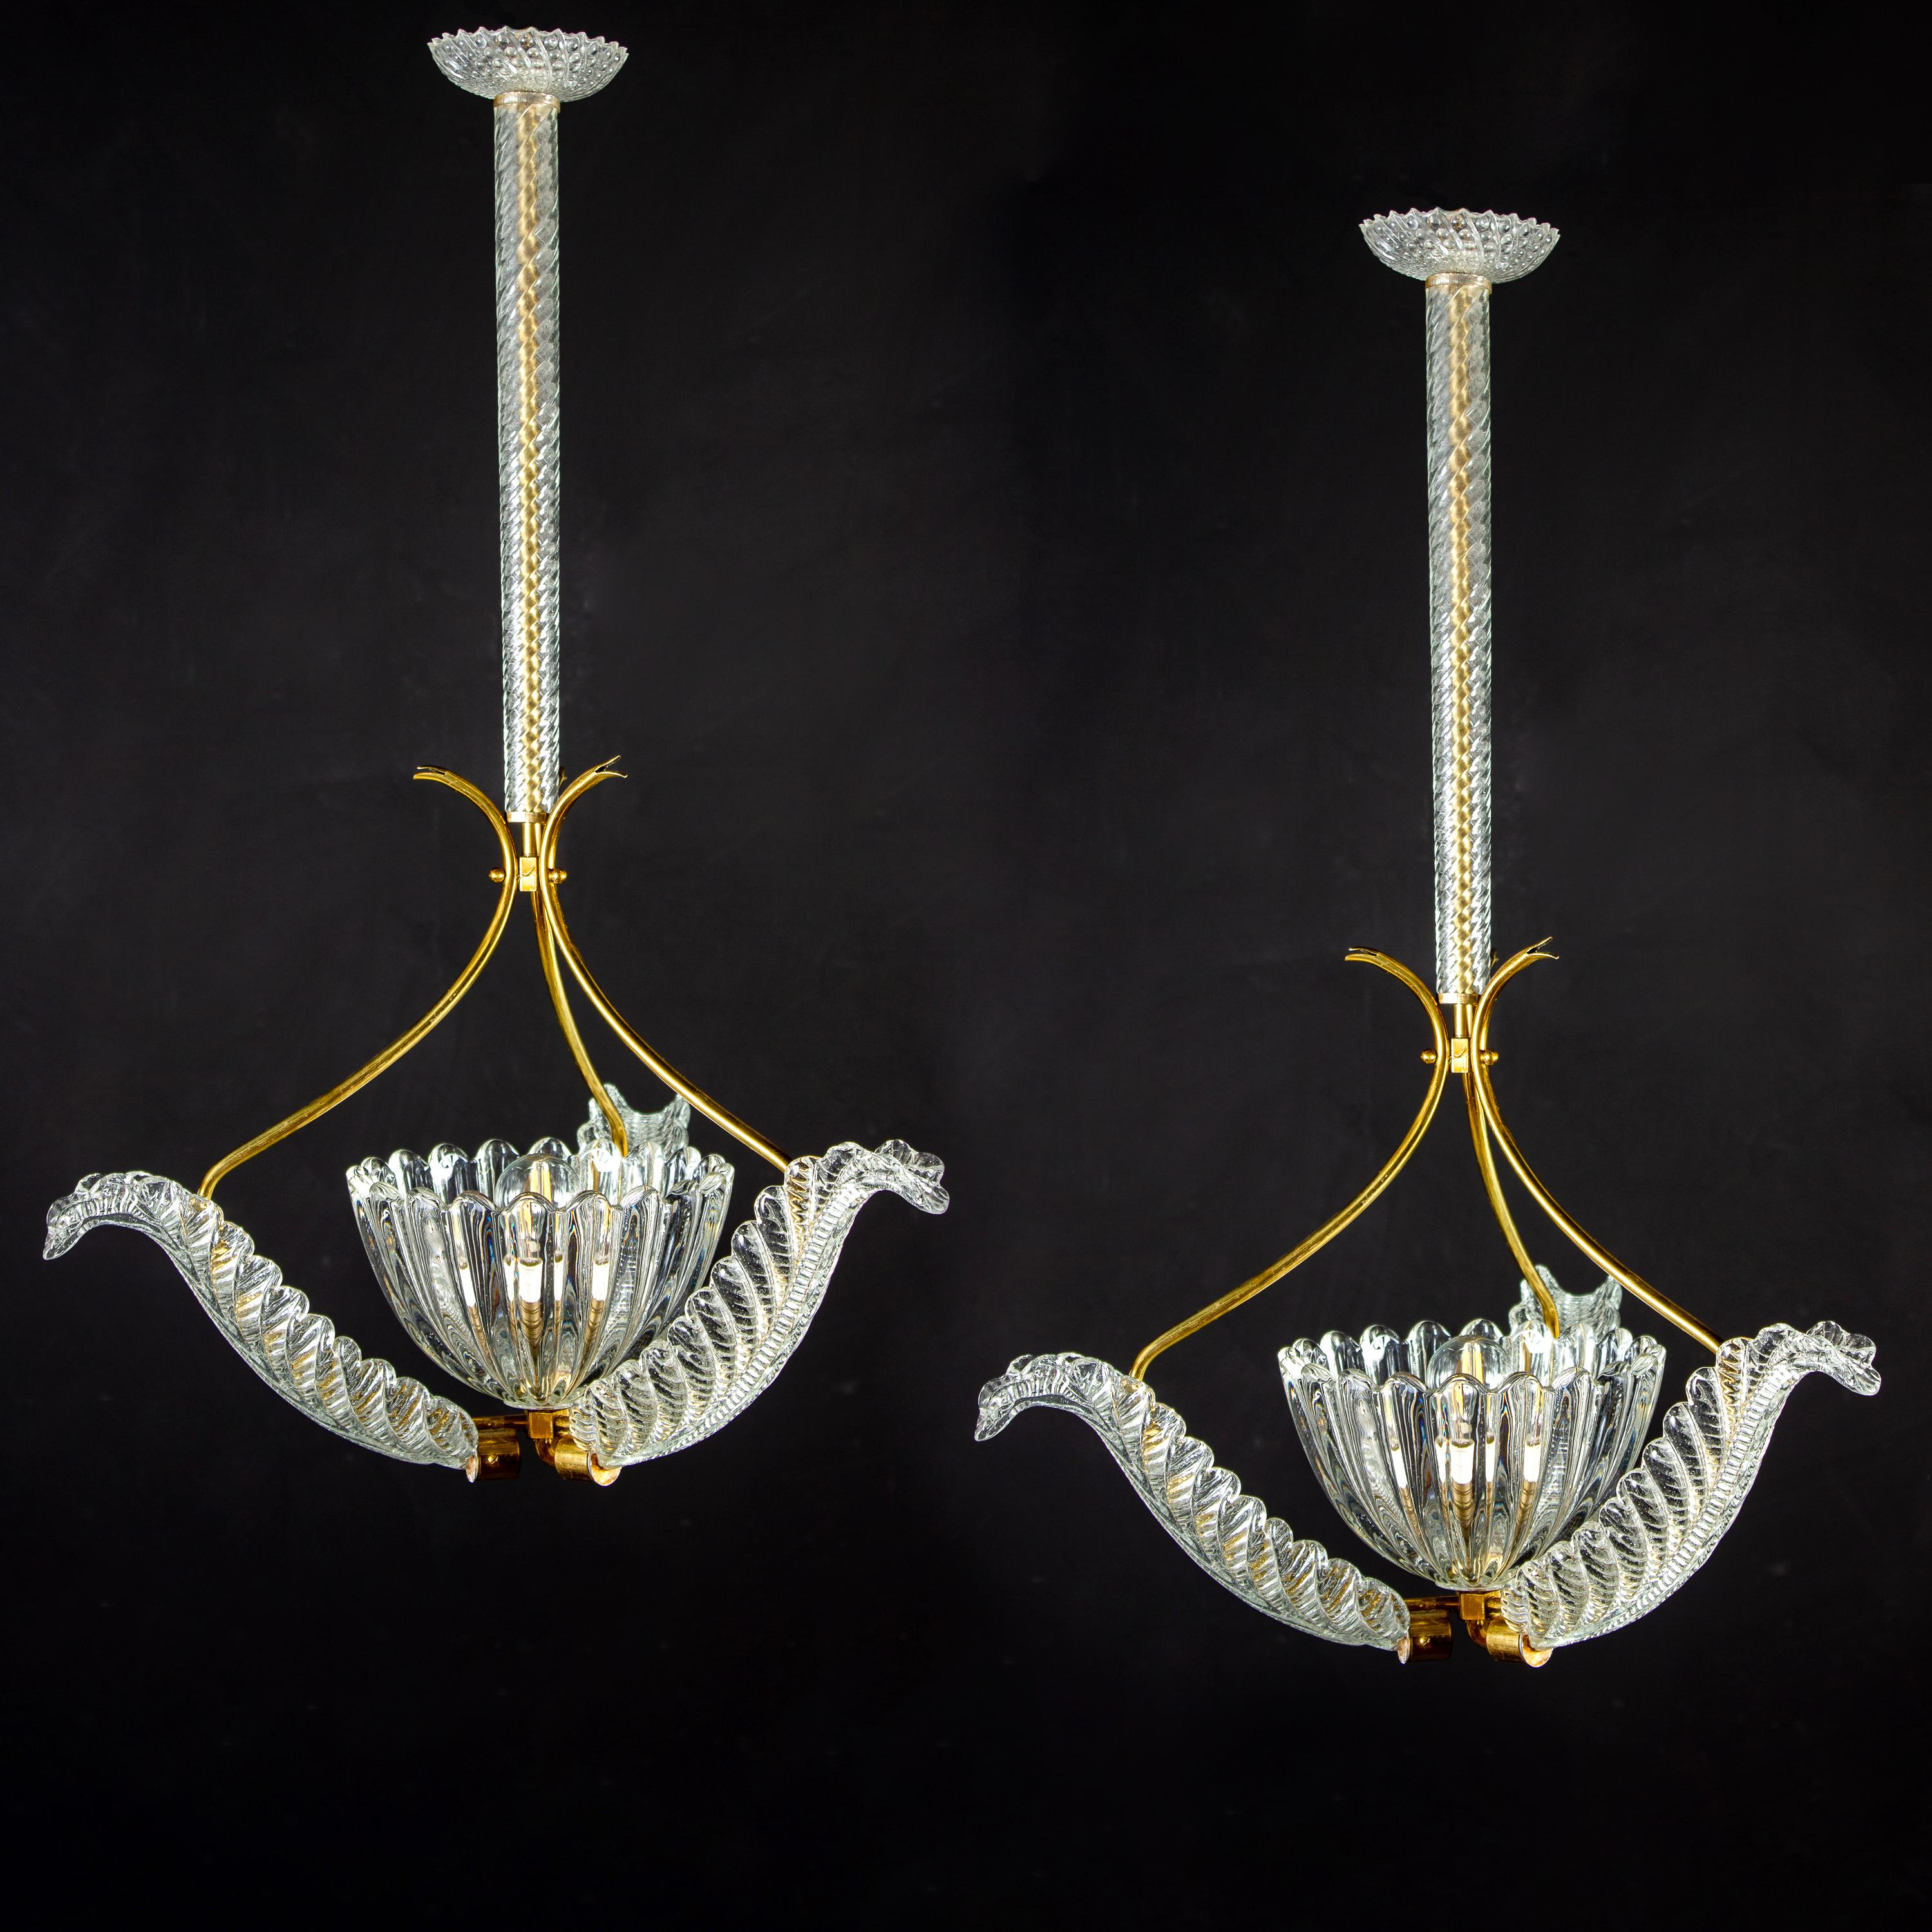 Élégante paire de pendentifs liberty montés sur laiton par Ercole Barovier, années 1940.
Chacune d'elles comporte trois précieuses feuilles en verre de Murano centrées par une élégante coupe soufflée à la main.
Une ampoule E27 conforme aux normes